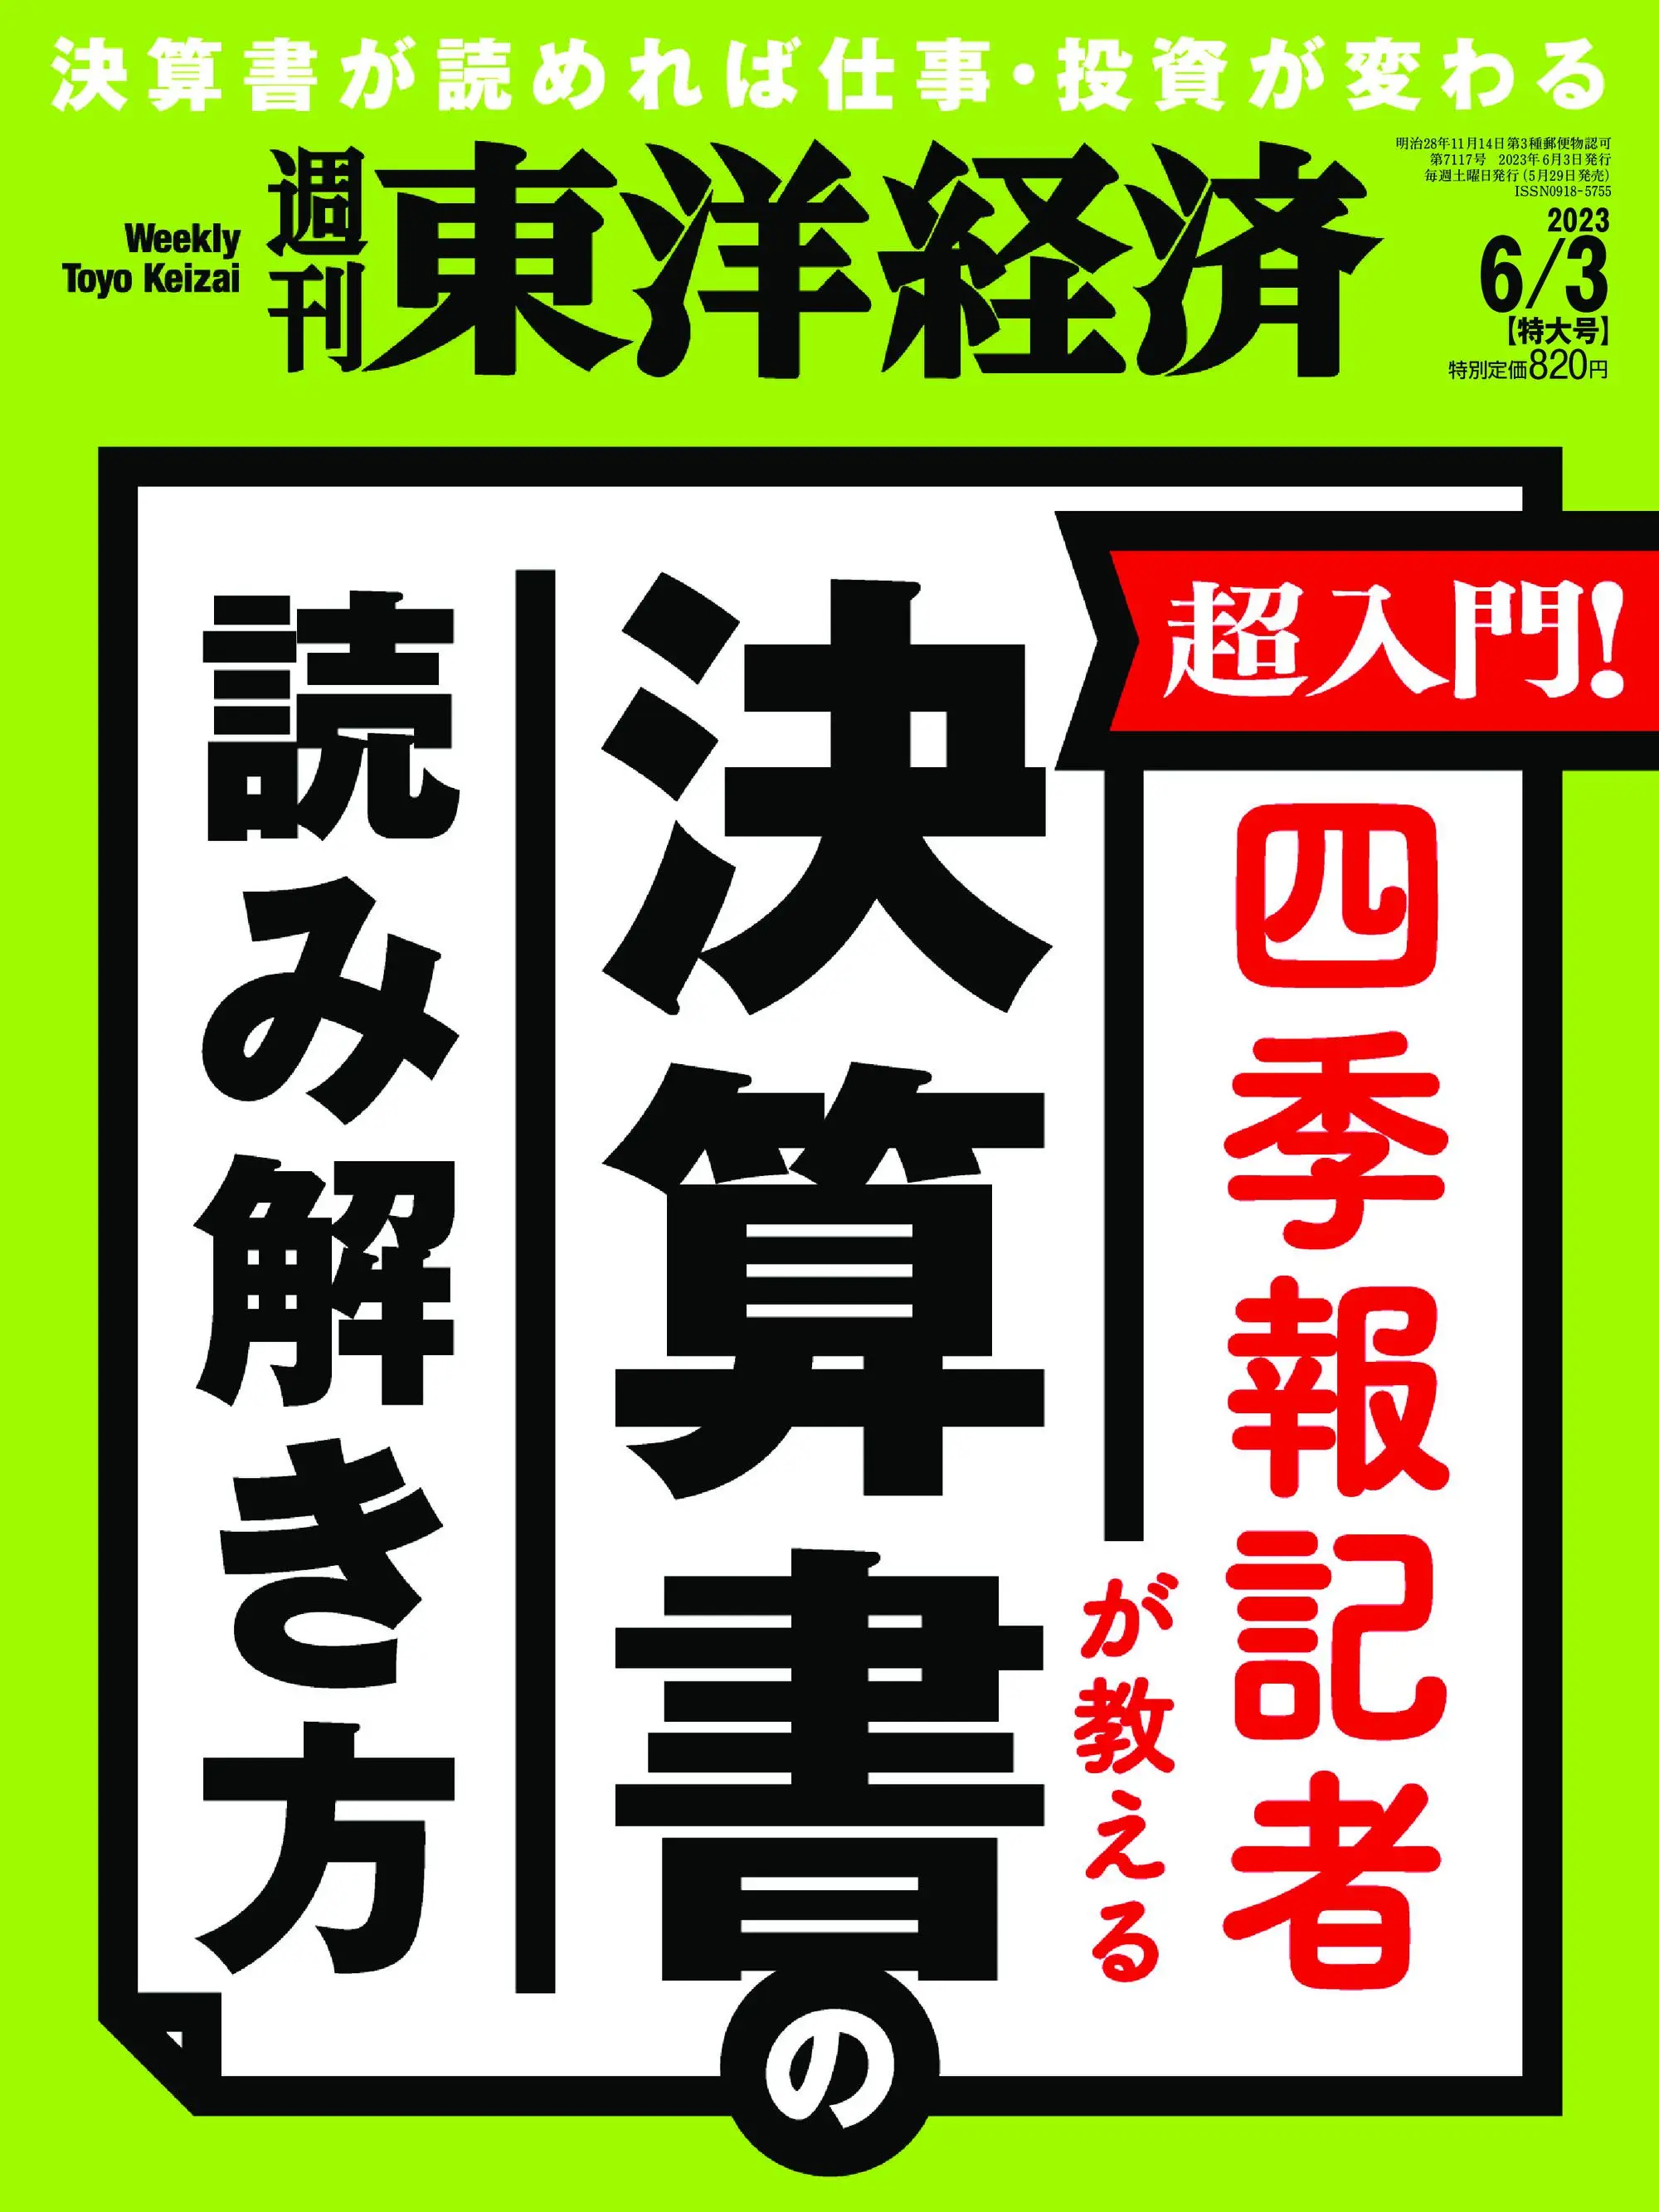 Weekly Toyo Keizai 週刊東洋経済 2023年5月29日 